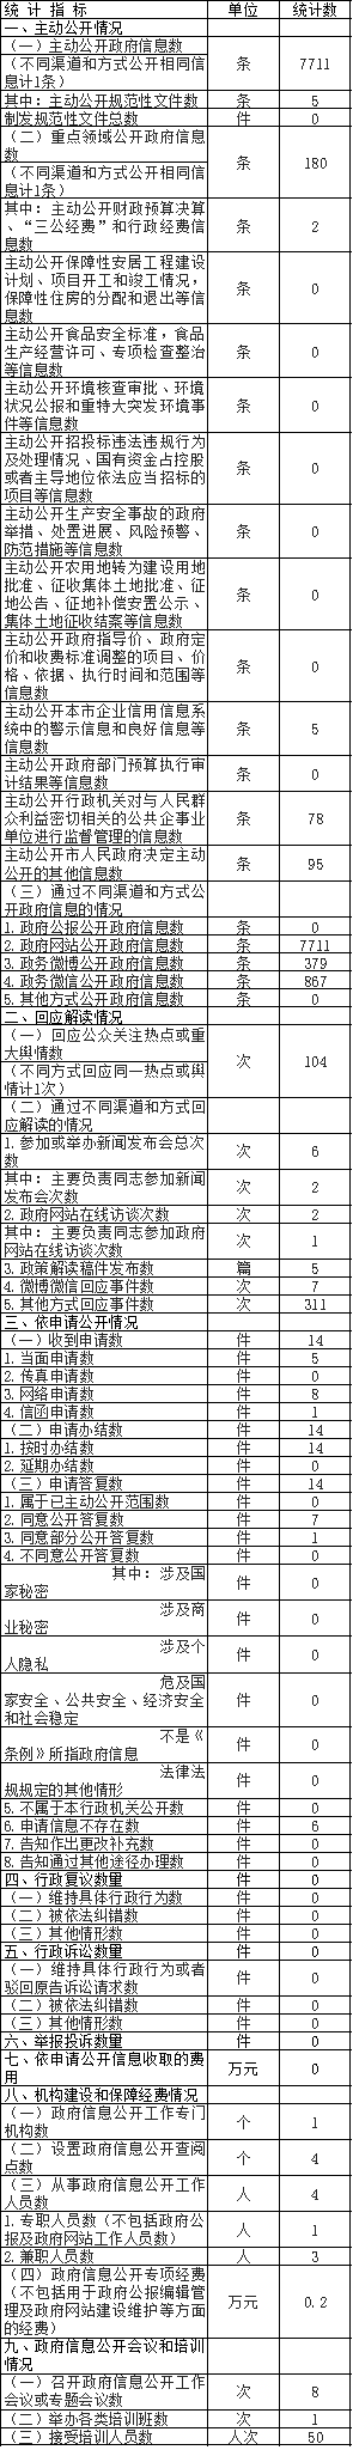 北京市新闻出版广电局政府信息公开情况统计表(2017年度)